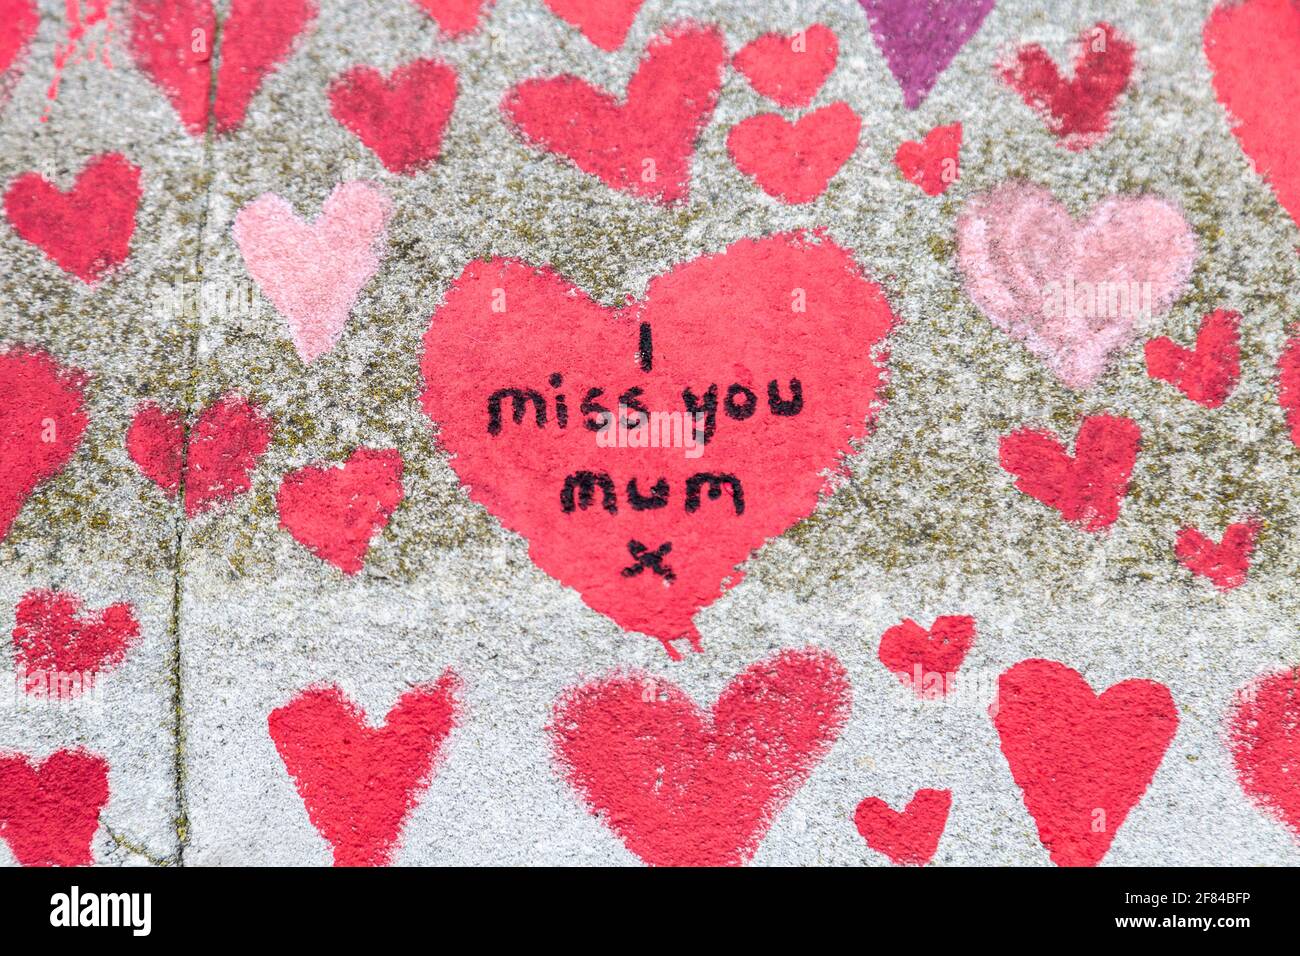 11 de abril de 2021, Londres, Reino Unido - Corazones dibujados en el Muro Conmemorativo Nacional COVID a lo largo de la Ribera del Sur como tributo a quienes murieron durante la pandemia del coronavirus Foto de stock